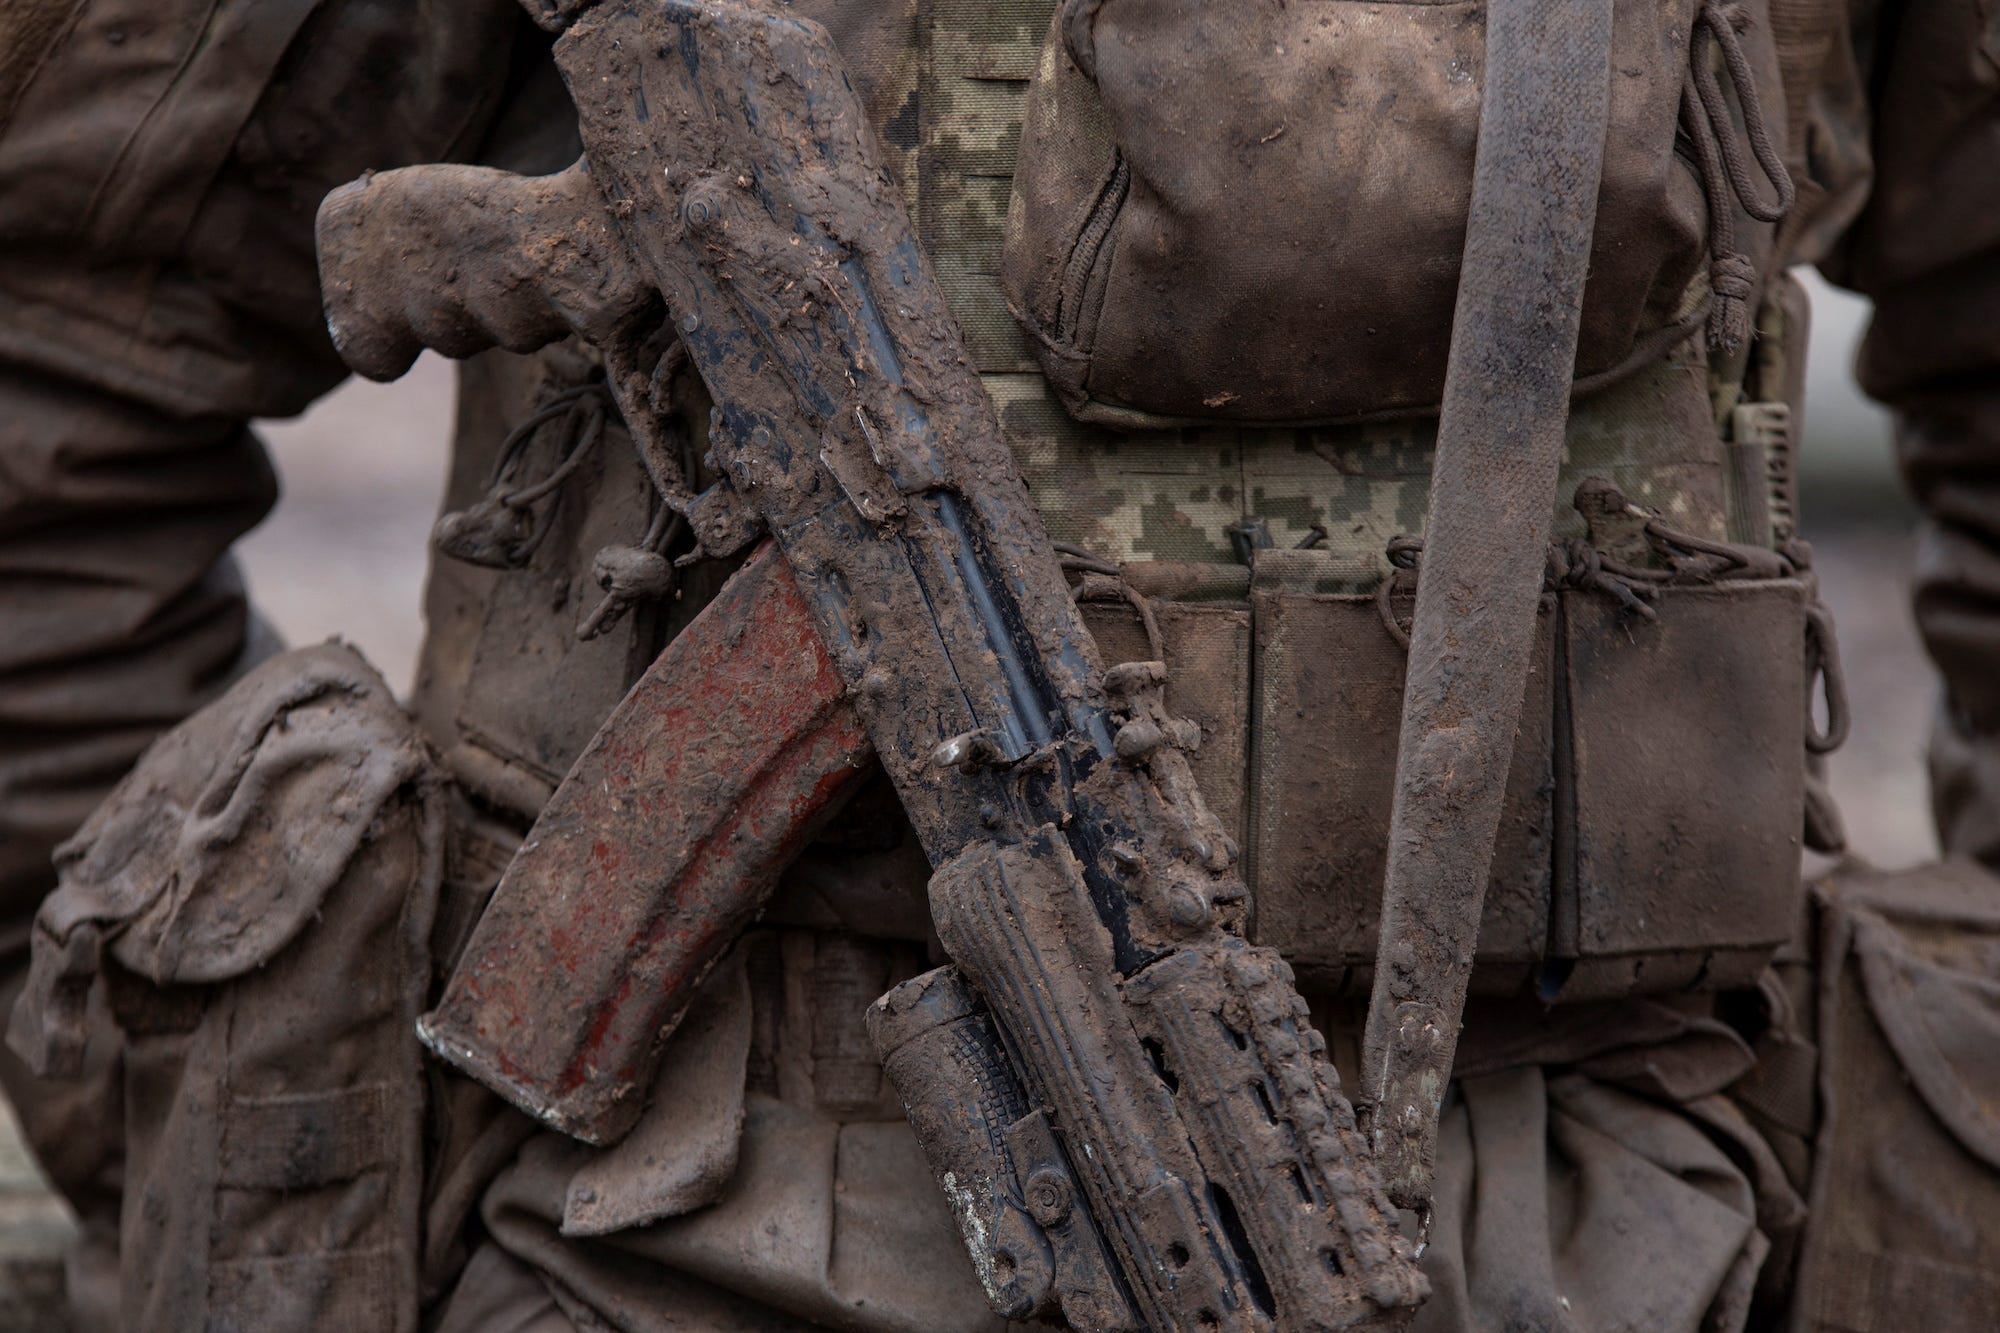 Eine mit Schlamm bedeckte AK-74 um den Hals eines ukrainischen Soldaten in Tarnkleidung